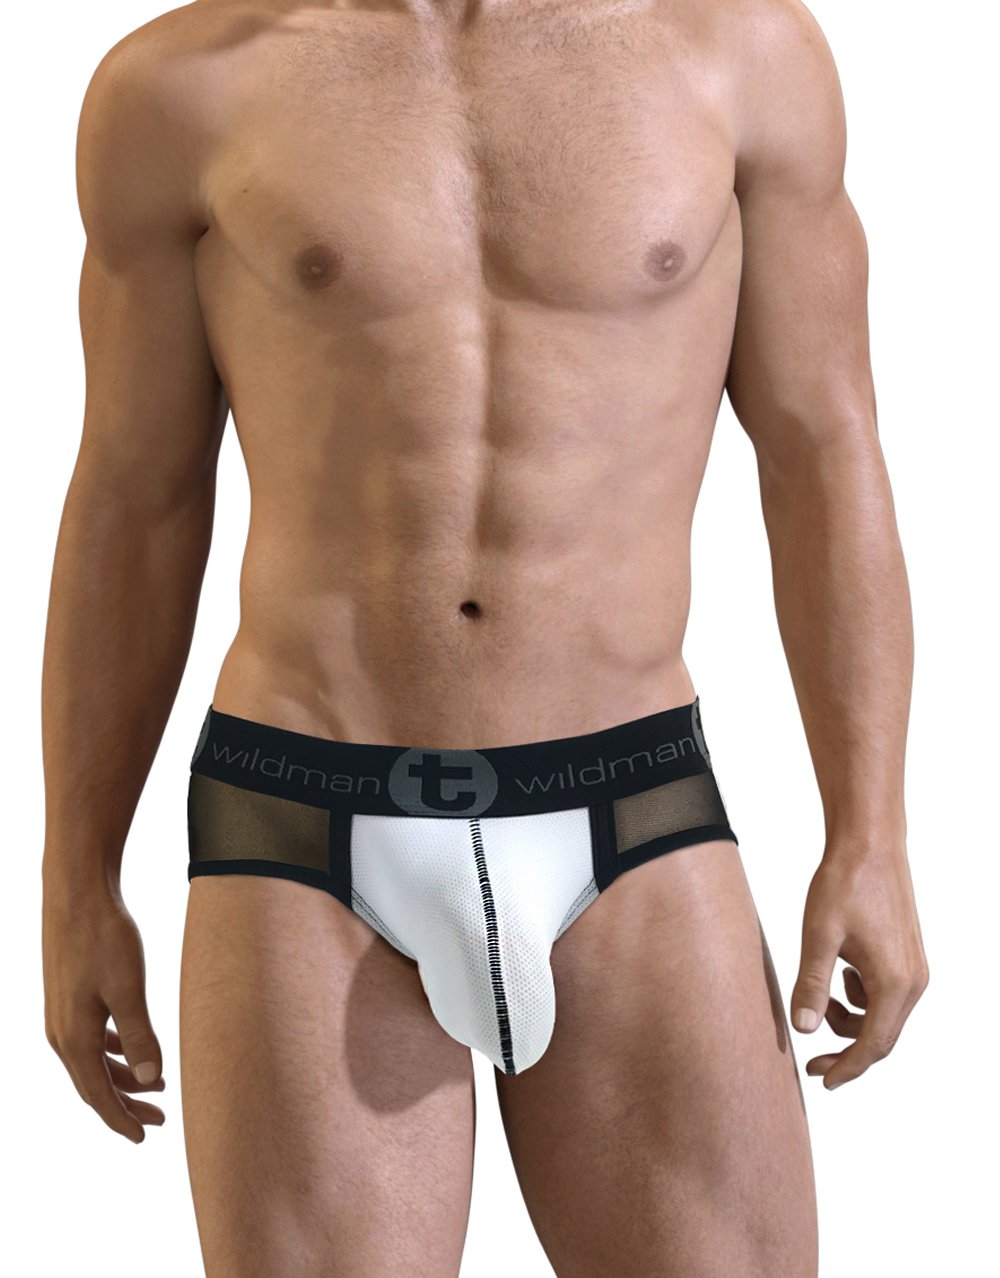 Underwear Review – WildmanT Slut Big Boy Pouch Brief – Underwear